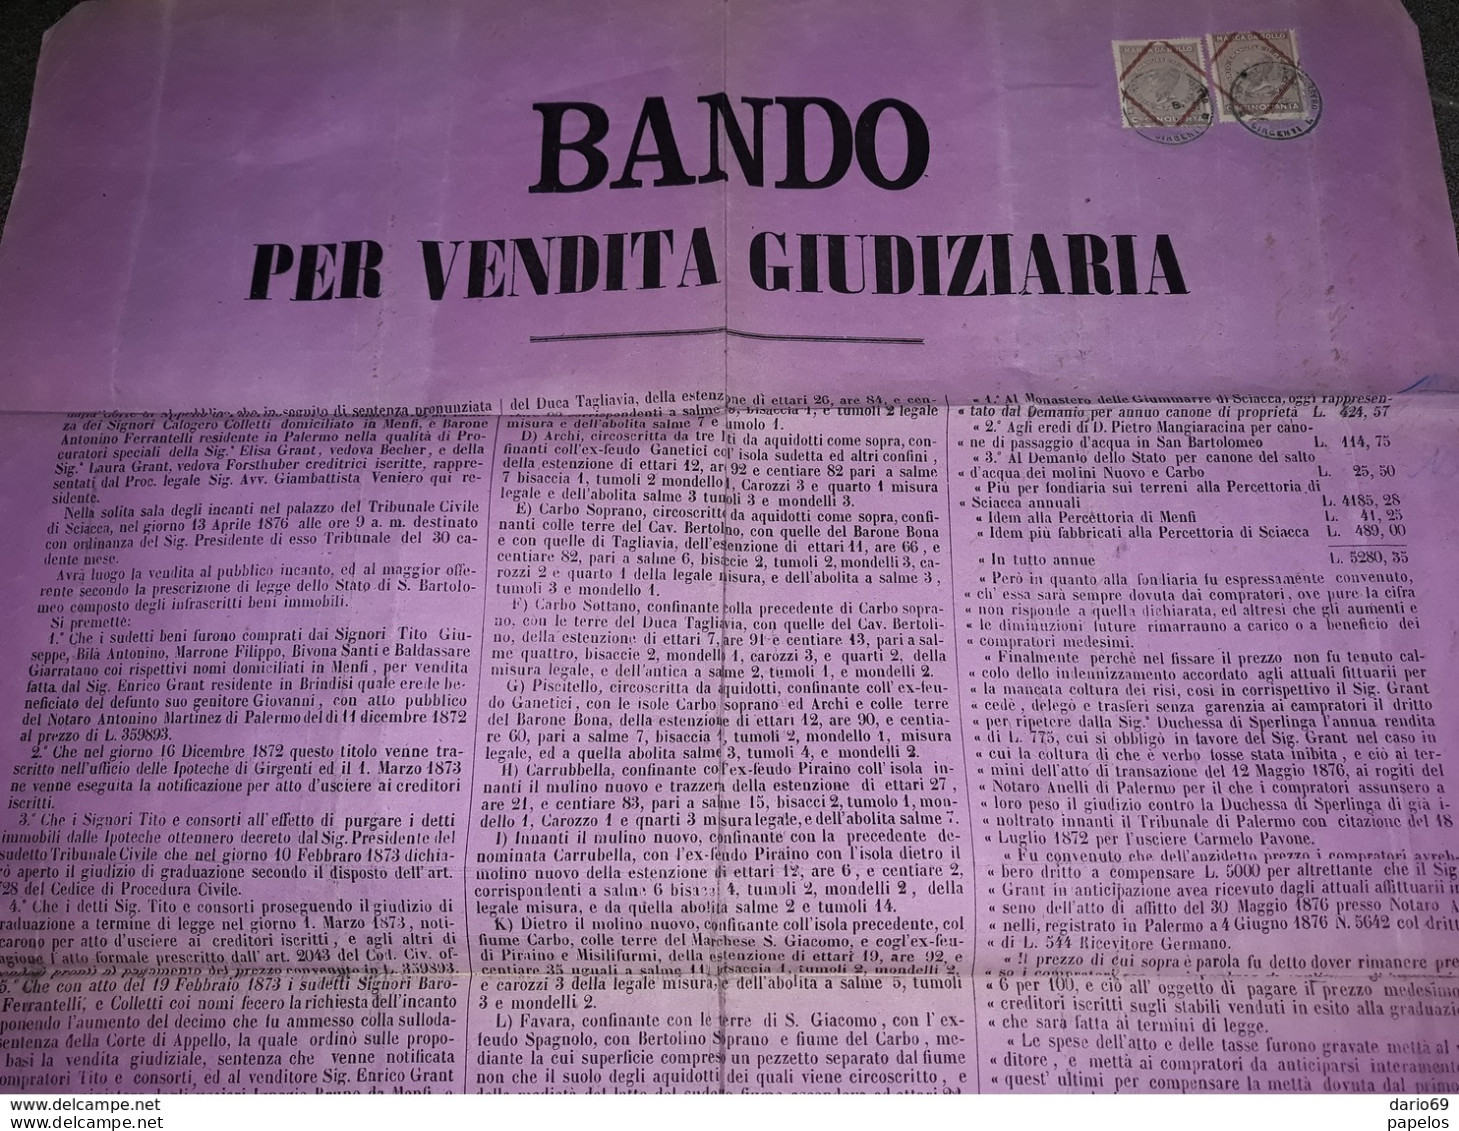 1877 MANIFESTO SCIACCA  AGRIGENTO  BANDO PER VENDITA GIUDIZIARIA  CON MARCHE DA BOLLO - Historische Documenten